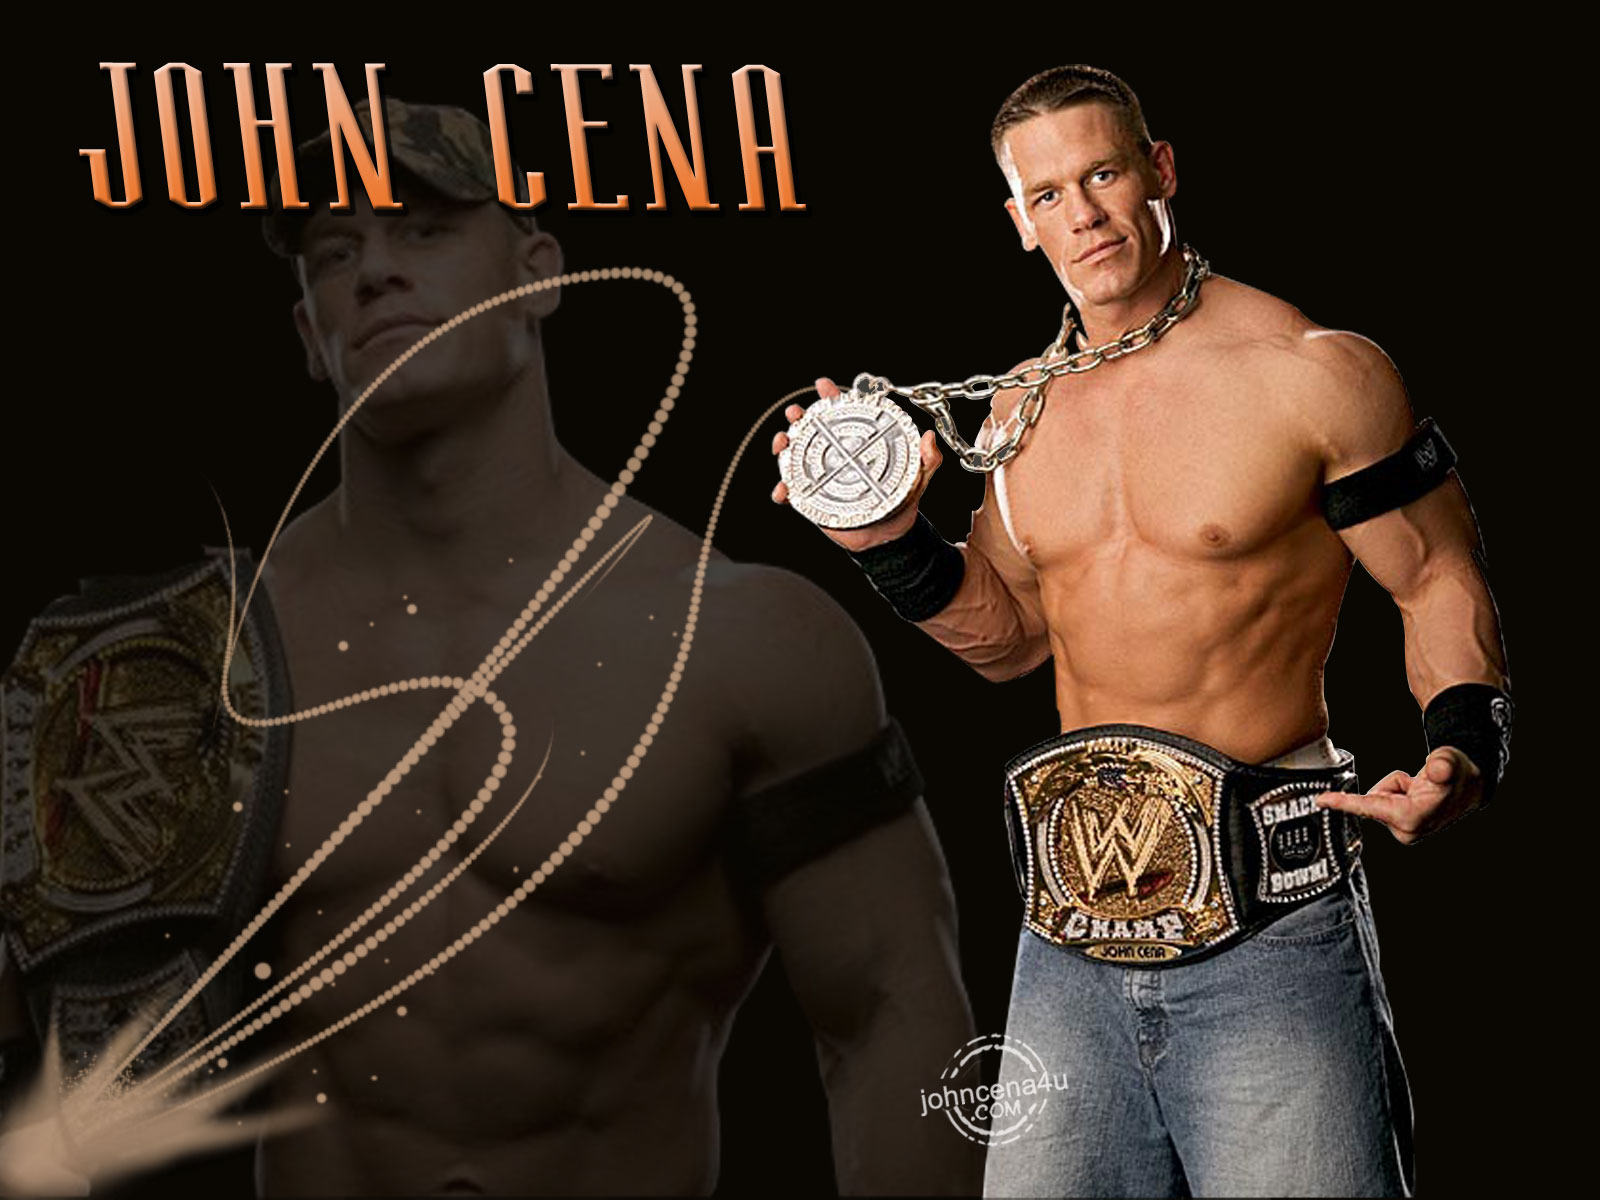 John Cena Wallpaper Background Image Hippowallpaper